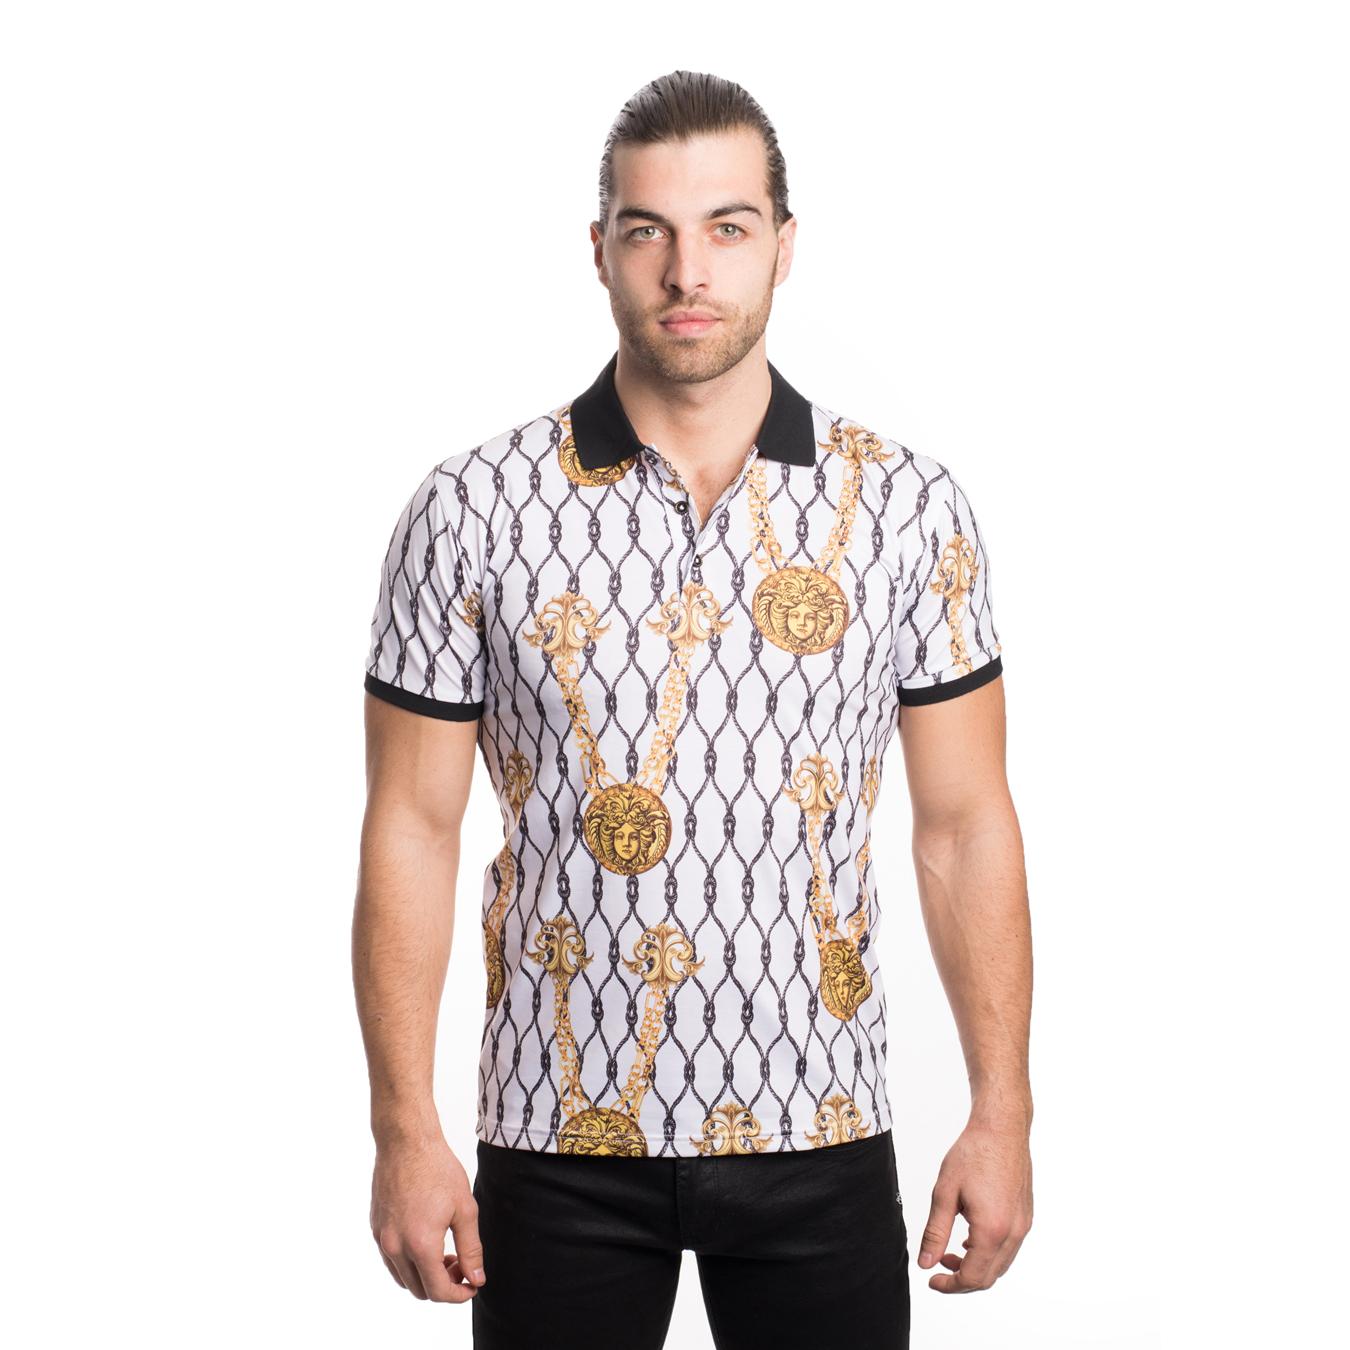 V.I.P. White / Gold / Black Medusa Design Short Sleeve Polo Shirt VPK20 ...